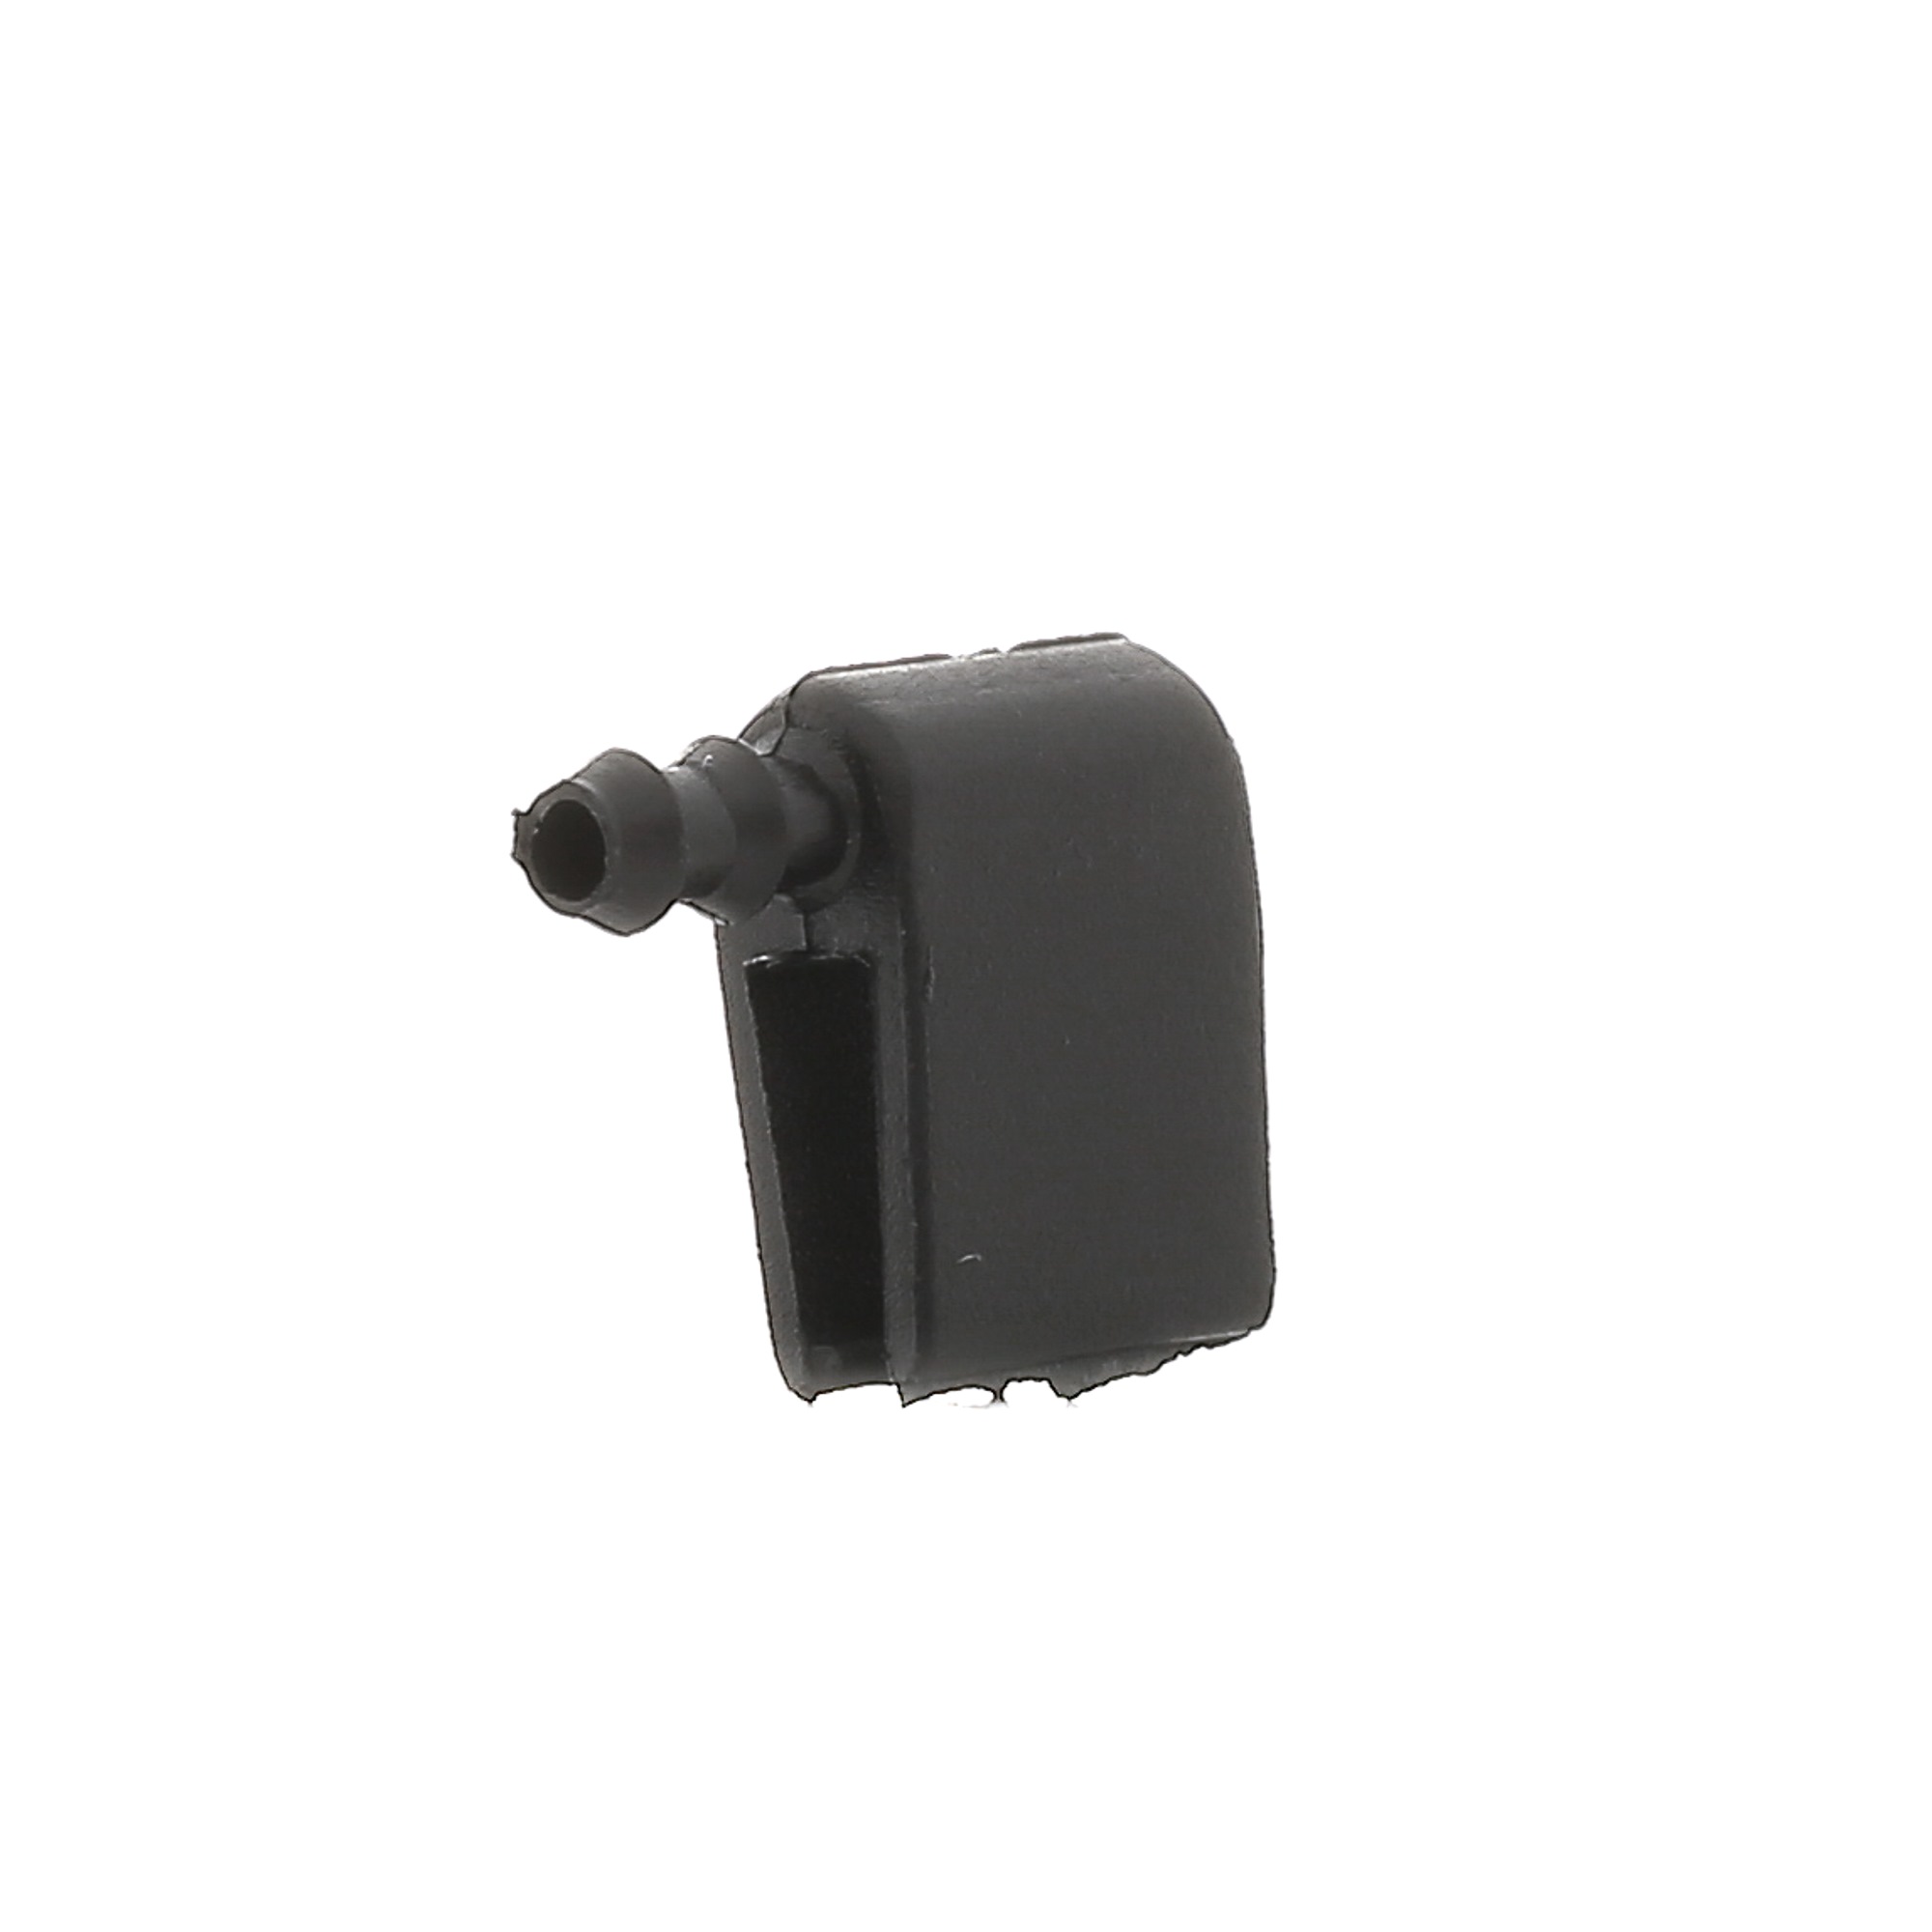 Volkswagen POLO Windscreen washer nozzle 16271366 3RG 86707 online buy